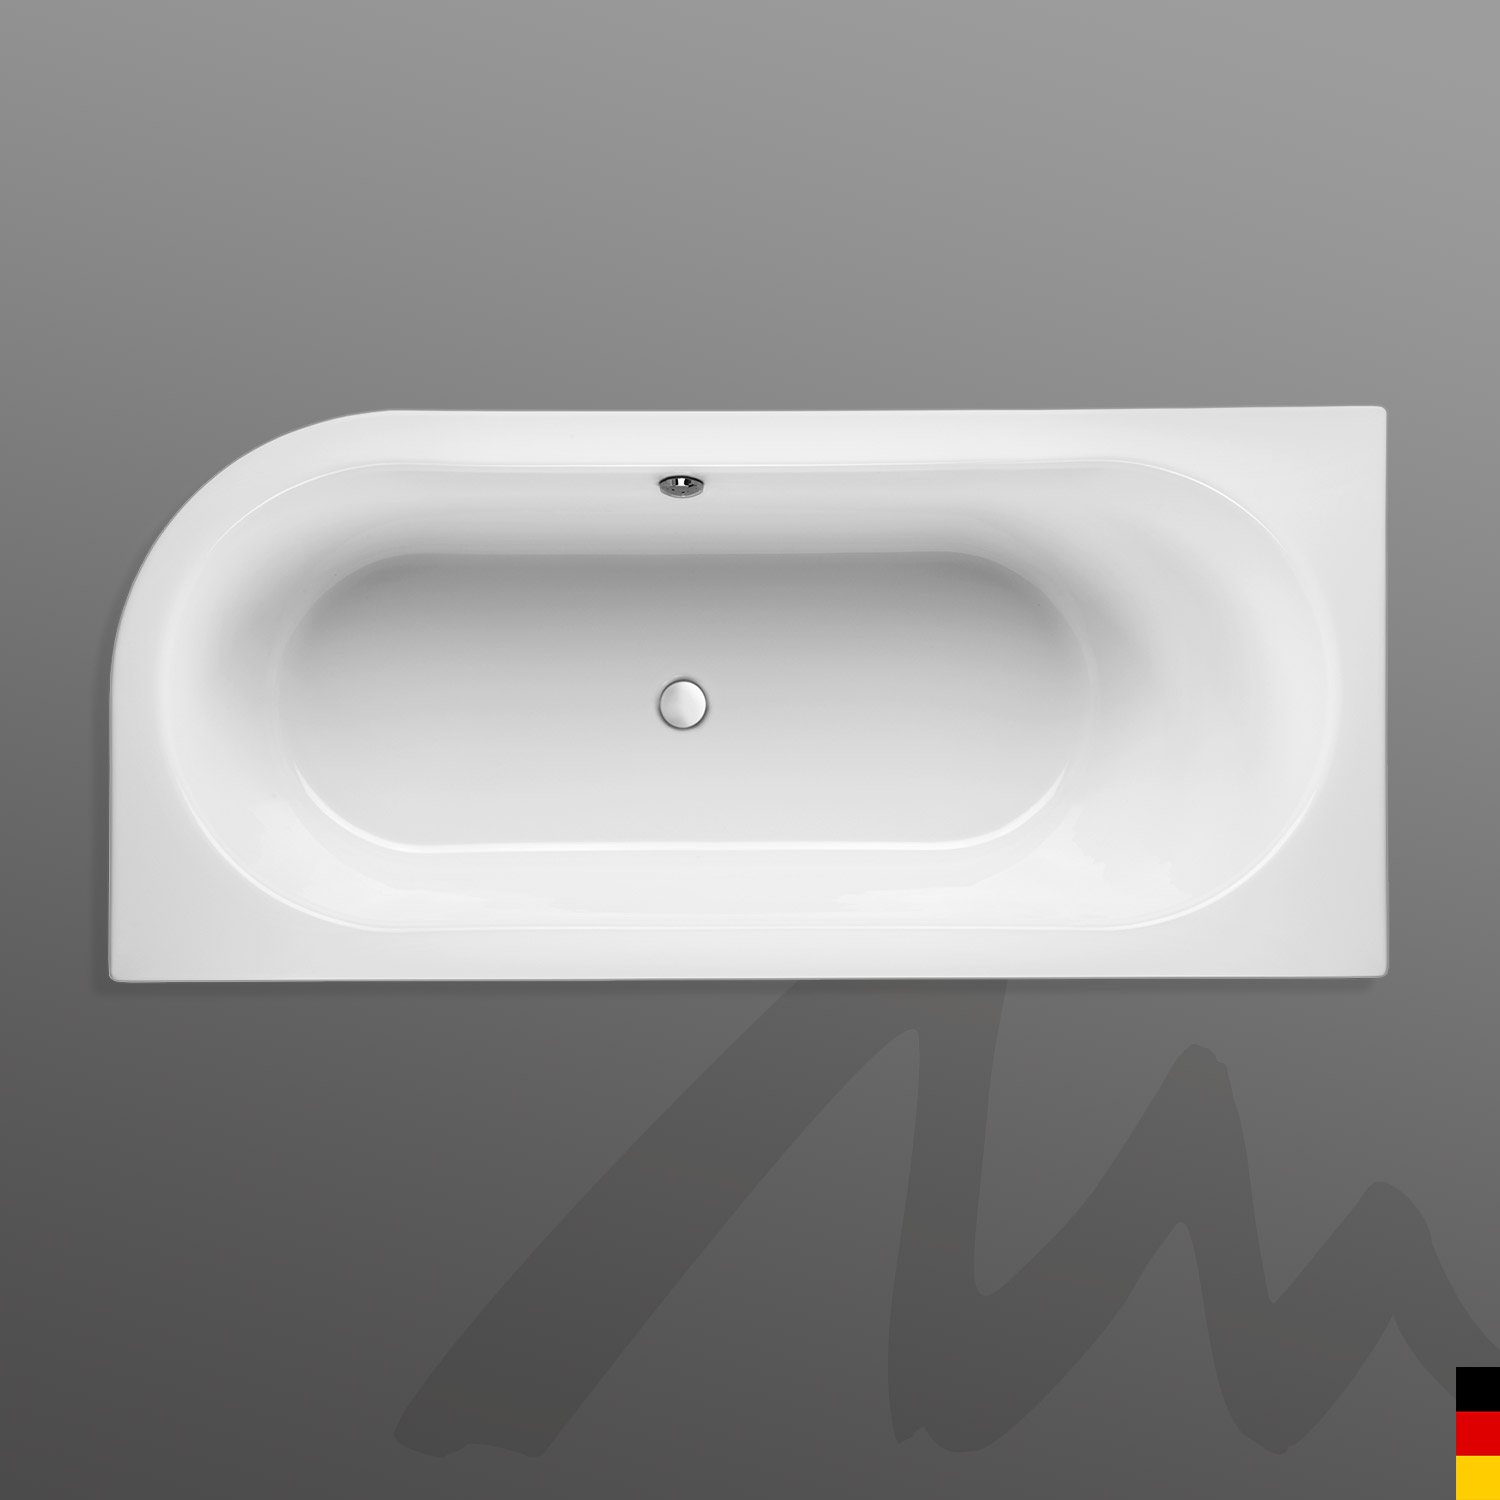 Mauersberger Badewanne Oval Primo 1 - 170/75 uno Ausführung links  170x75x44  Farbe:rein-weiß